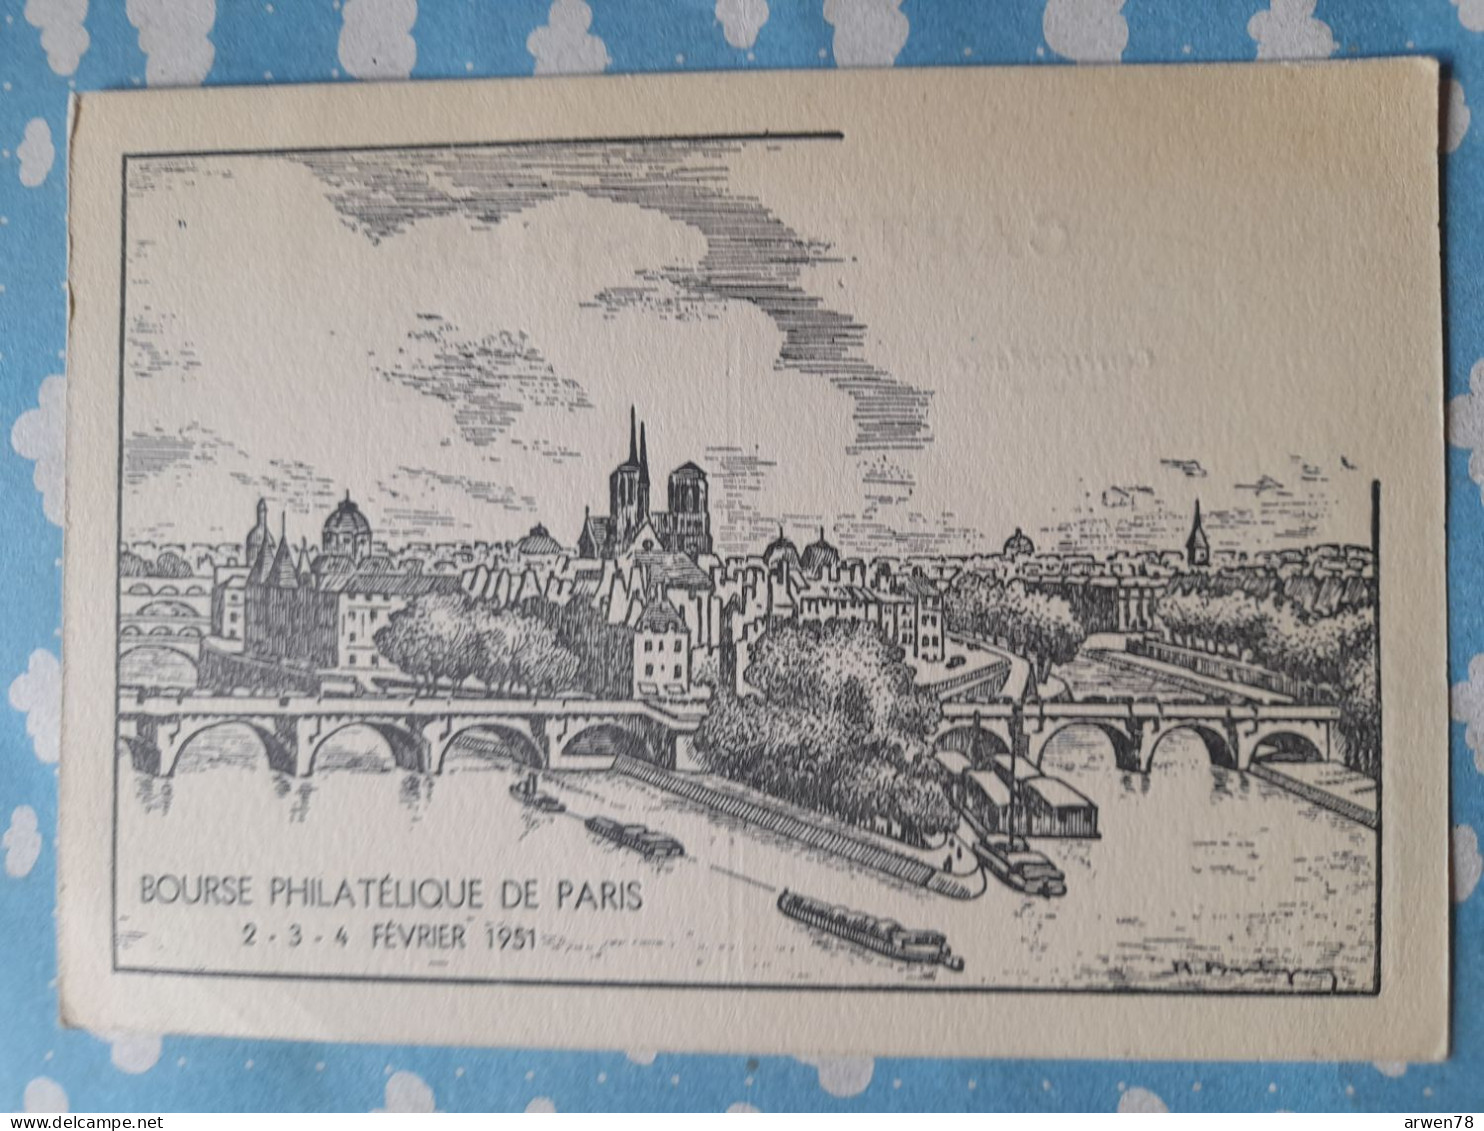 BOURSE PHILATELIQUE DE PARIS 2 . 3 . 4 FEVRIER 1951 - Postal Services